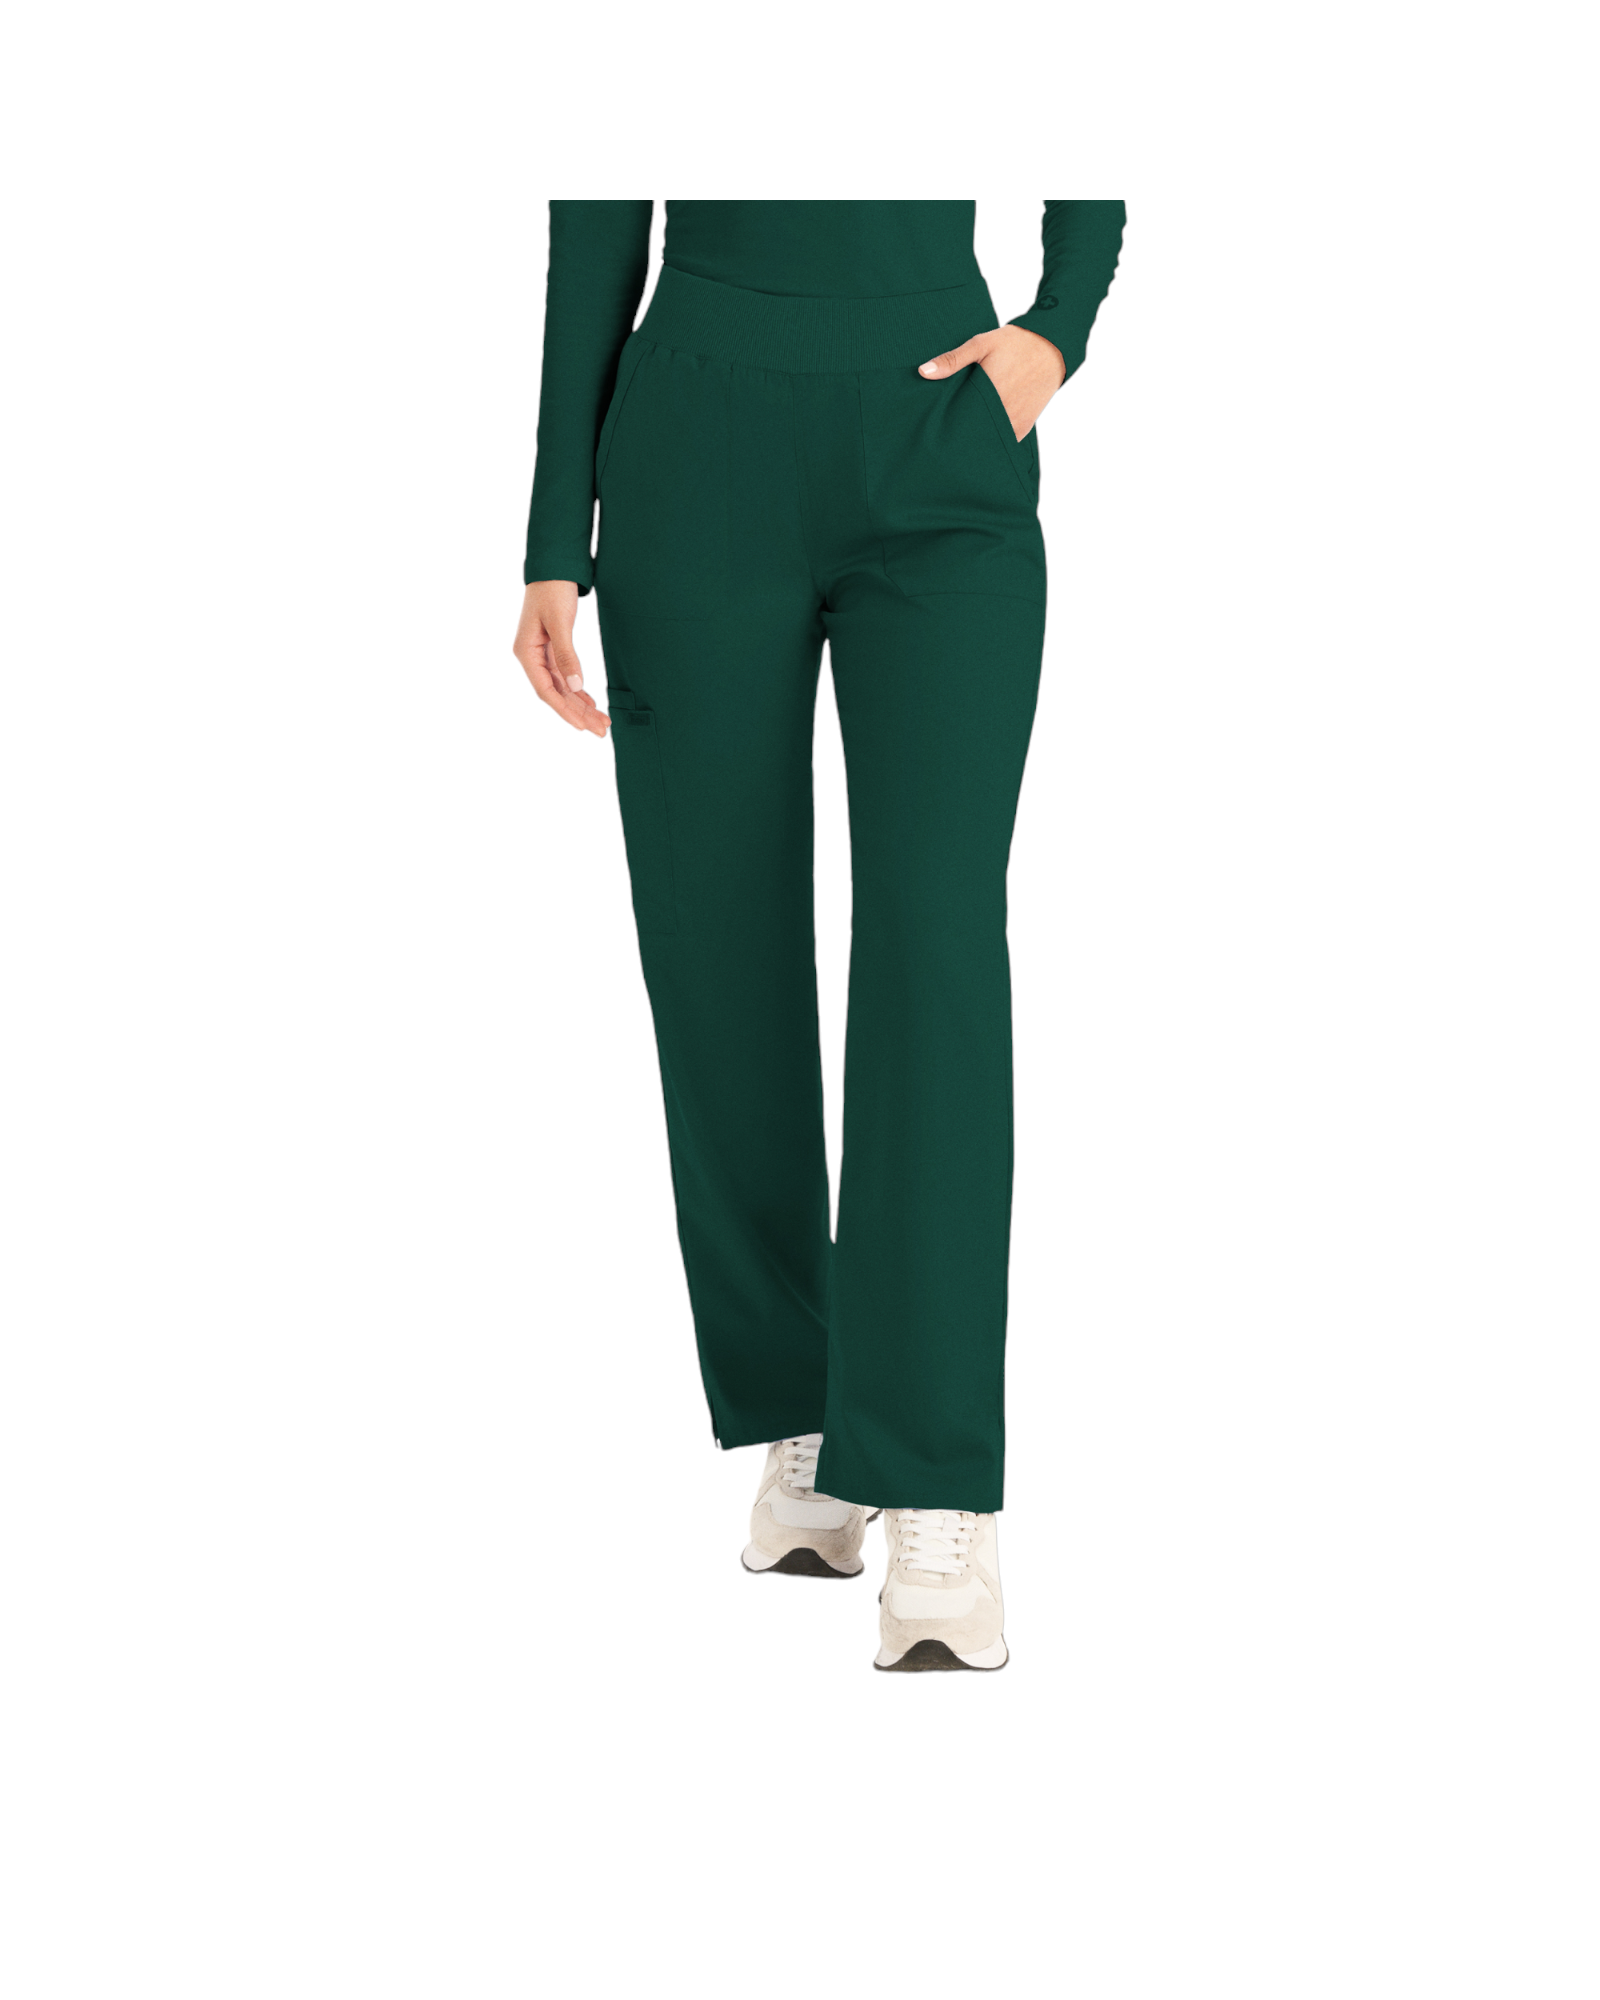 Pantalons  6 poches pour femmes Landau Proflex #LB405 OS couleur Vert fôret 